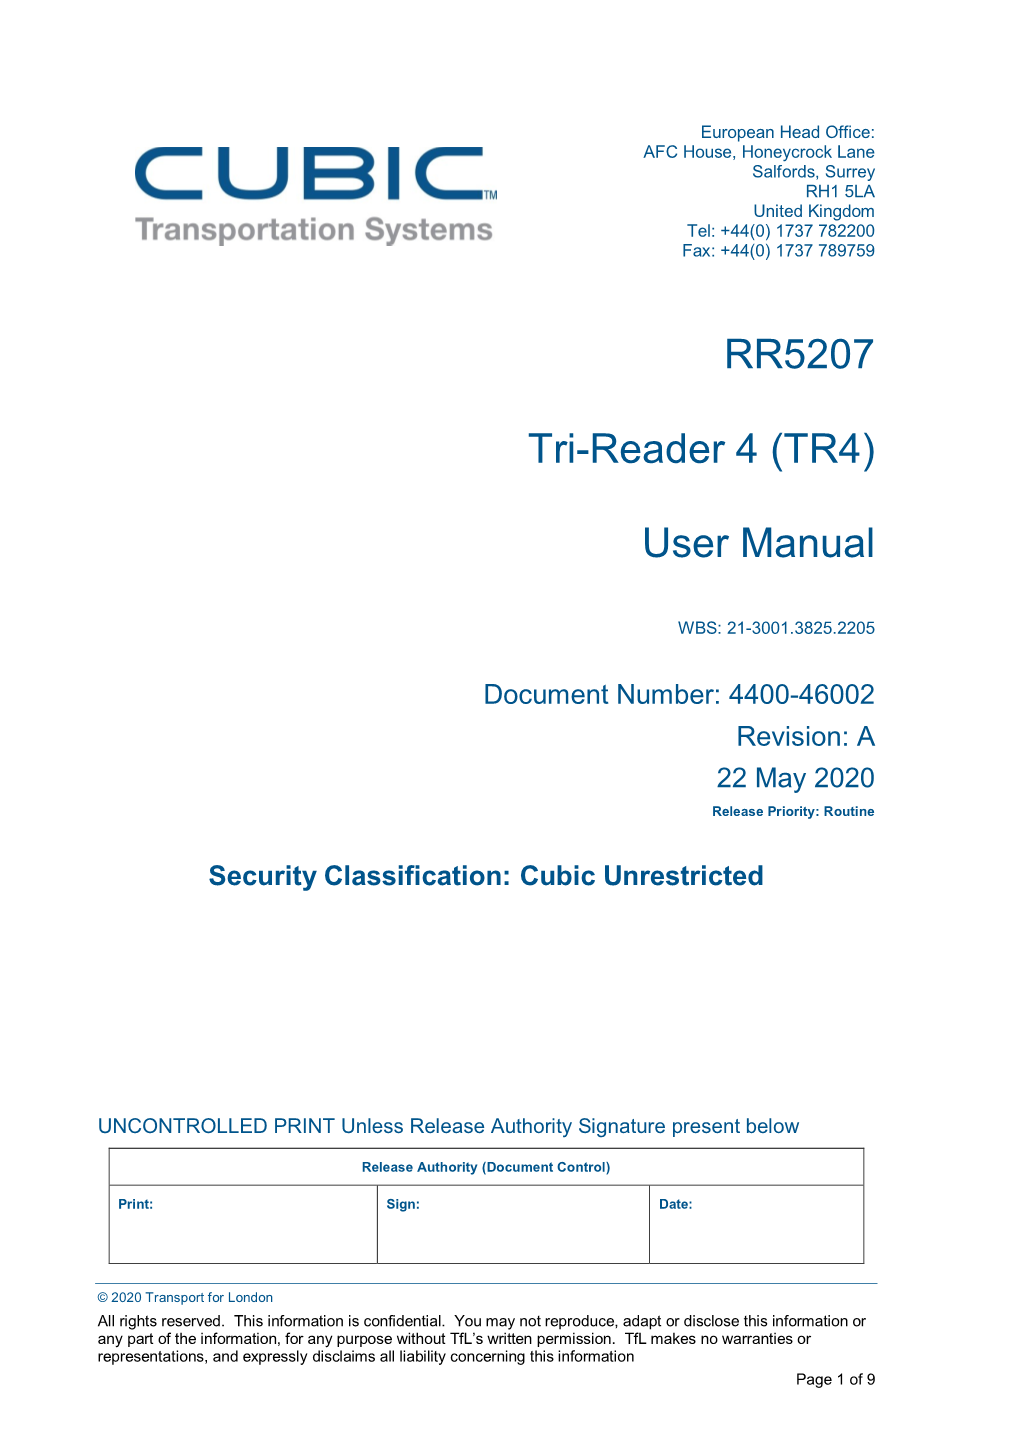 (TR4) User Manual